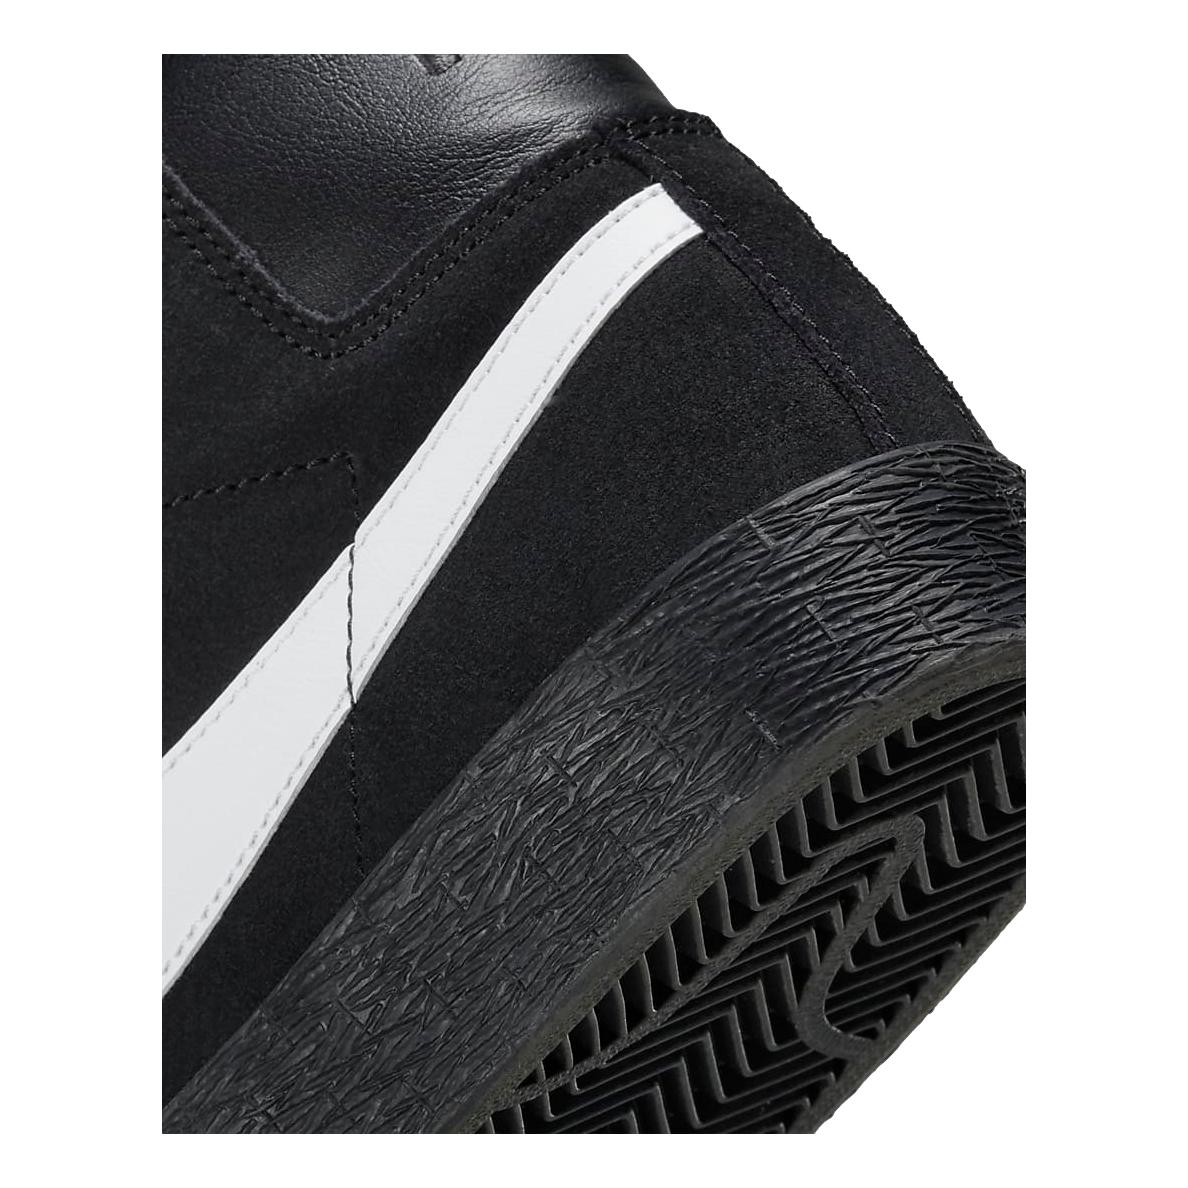 Nike SB Blazer Mid Black/White/Black Black - Venue Skateboards